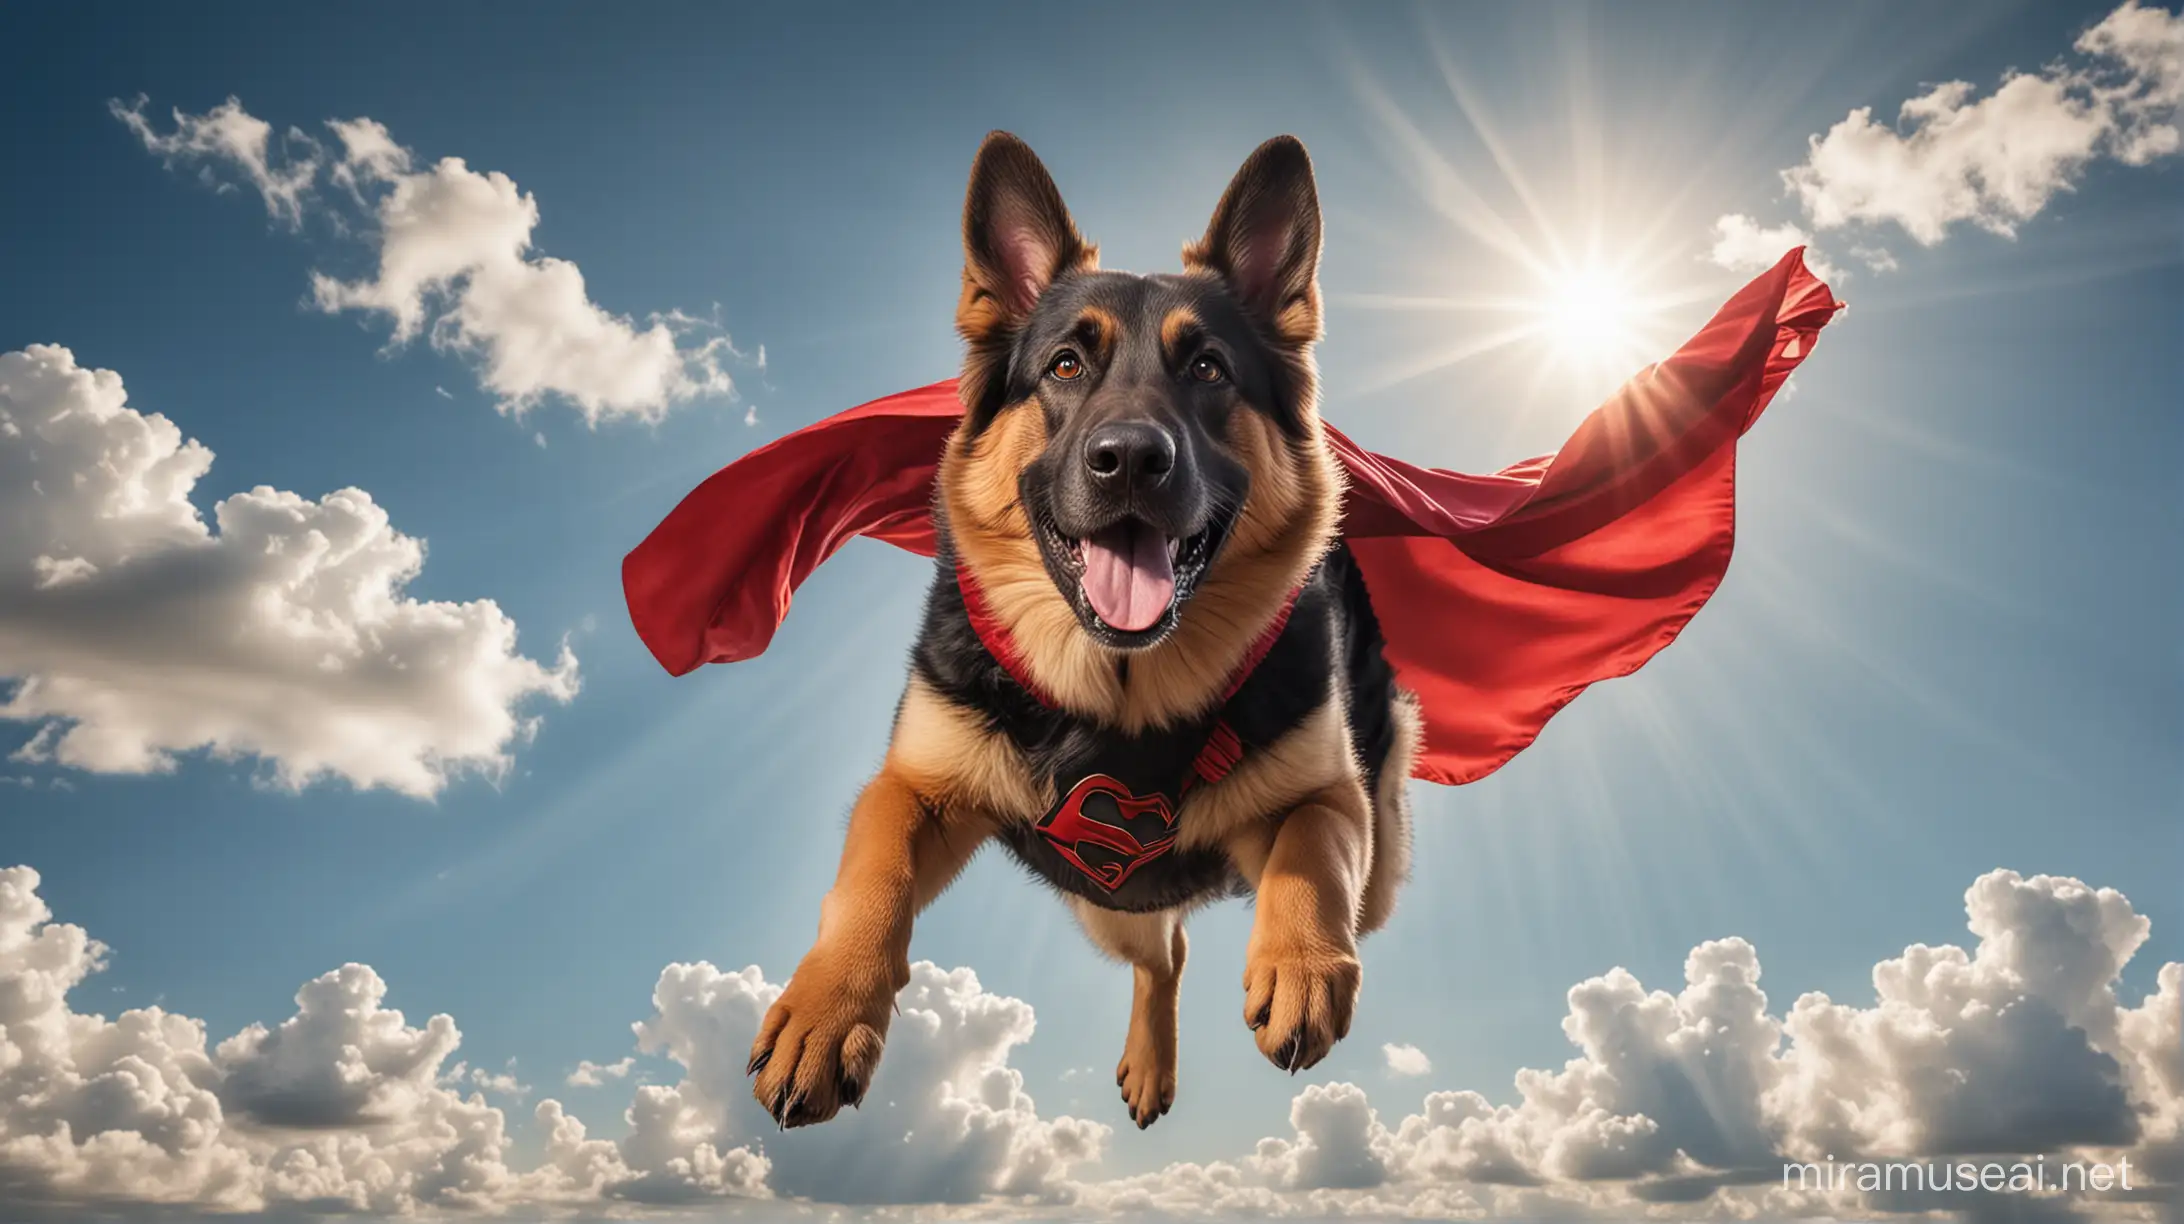 Perro de la raza pastor alemán, volando en un cielo azul con algunas nubes esponjosas, el perro no tiene alas pero sí posa como super héro con capa roja de superman, el sol incide perpendicular para hacer la imagen brillante. Tiene una expresión feliz e intrépida en su rostro, mira hacia el horizonte.